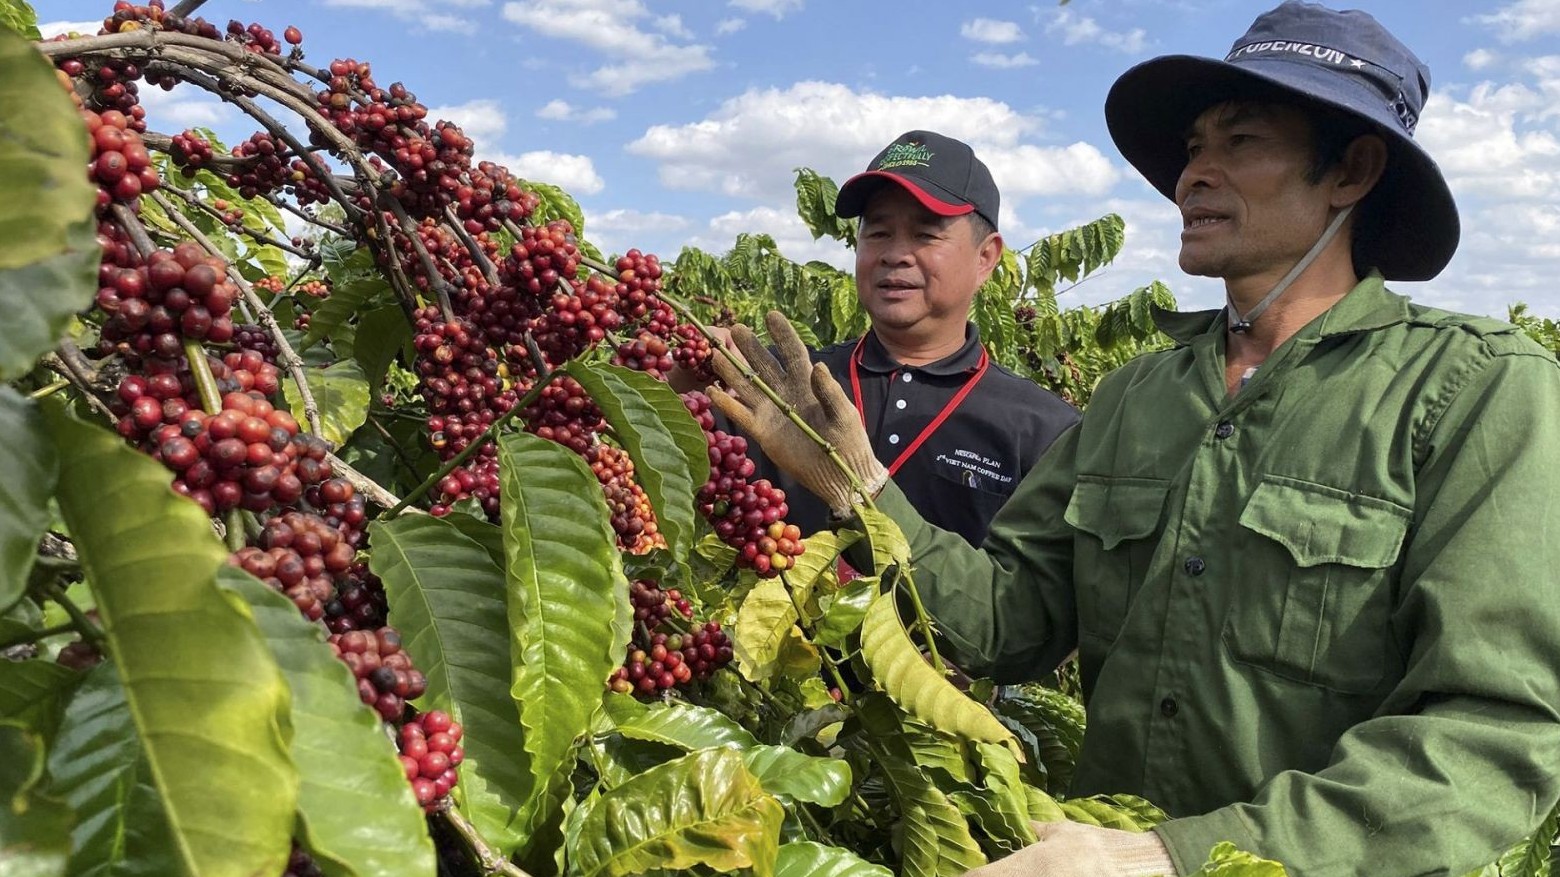 Xuất khẩu cà phê tháng 9 của Việt Nam giảm mạnh về lượng và trị giá